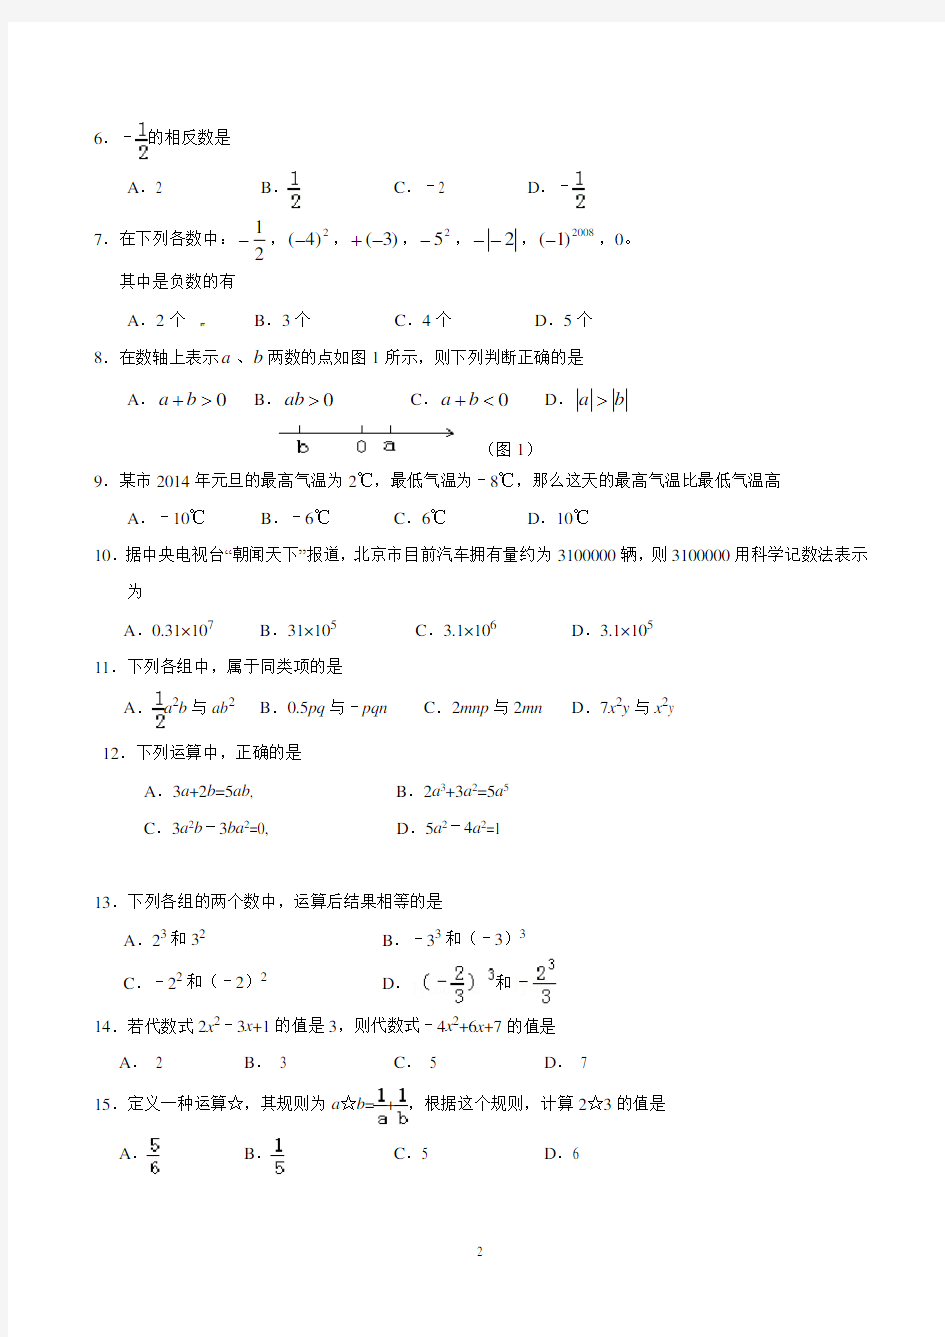 初一级上学期期中考试数学试卷含答案(共3套,北师大版)